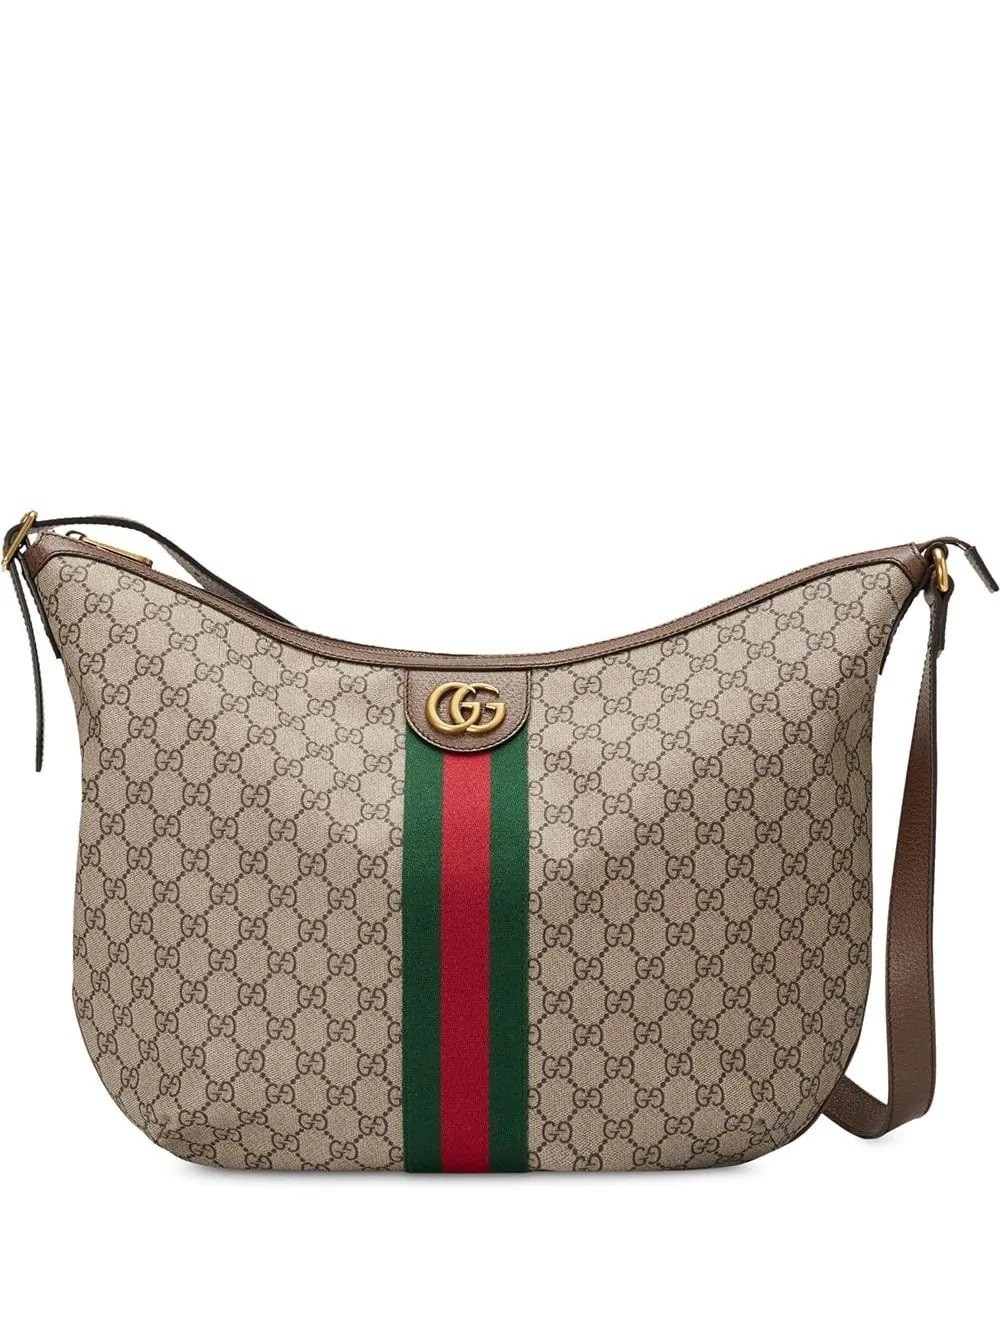 Gucci Brown Ophidia GG Shoulder Bag 547939 9IK3T 8745